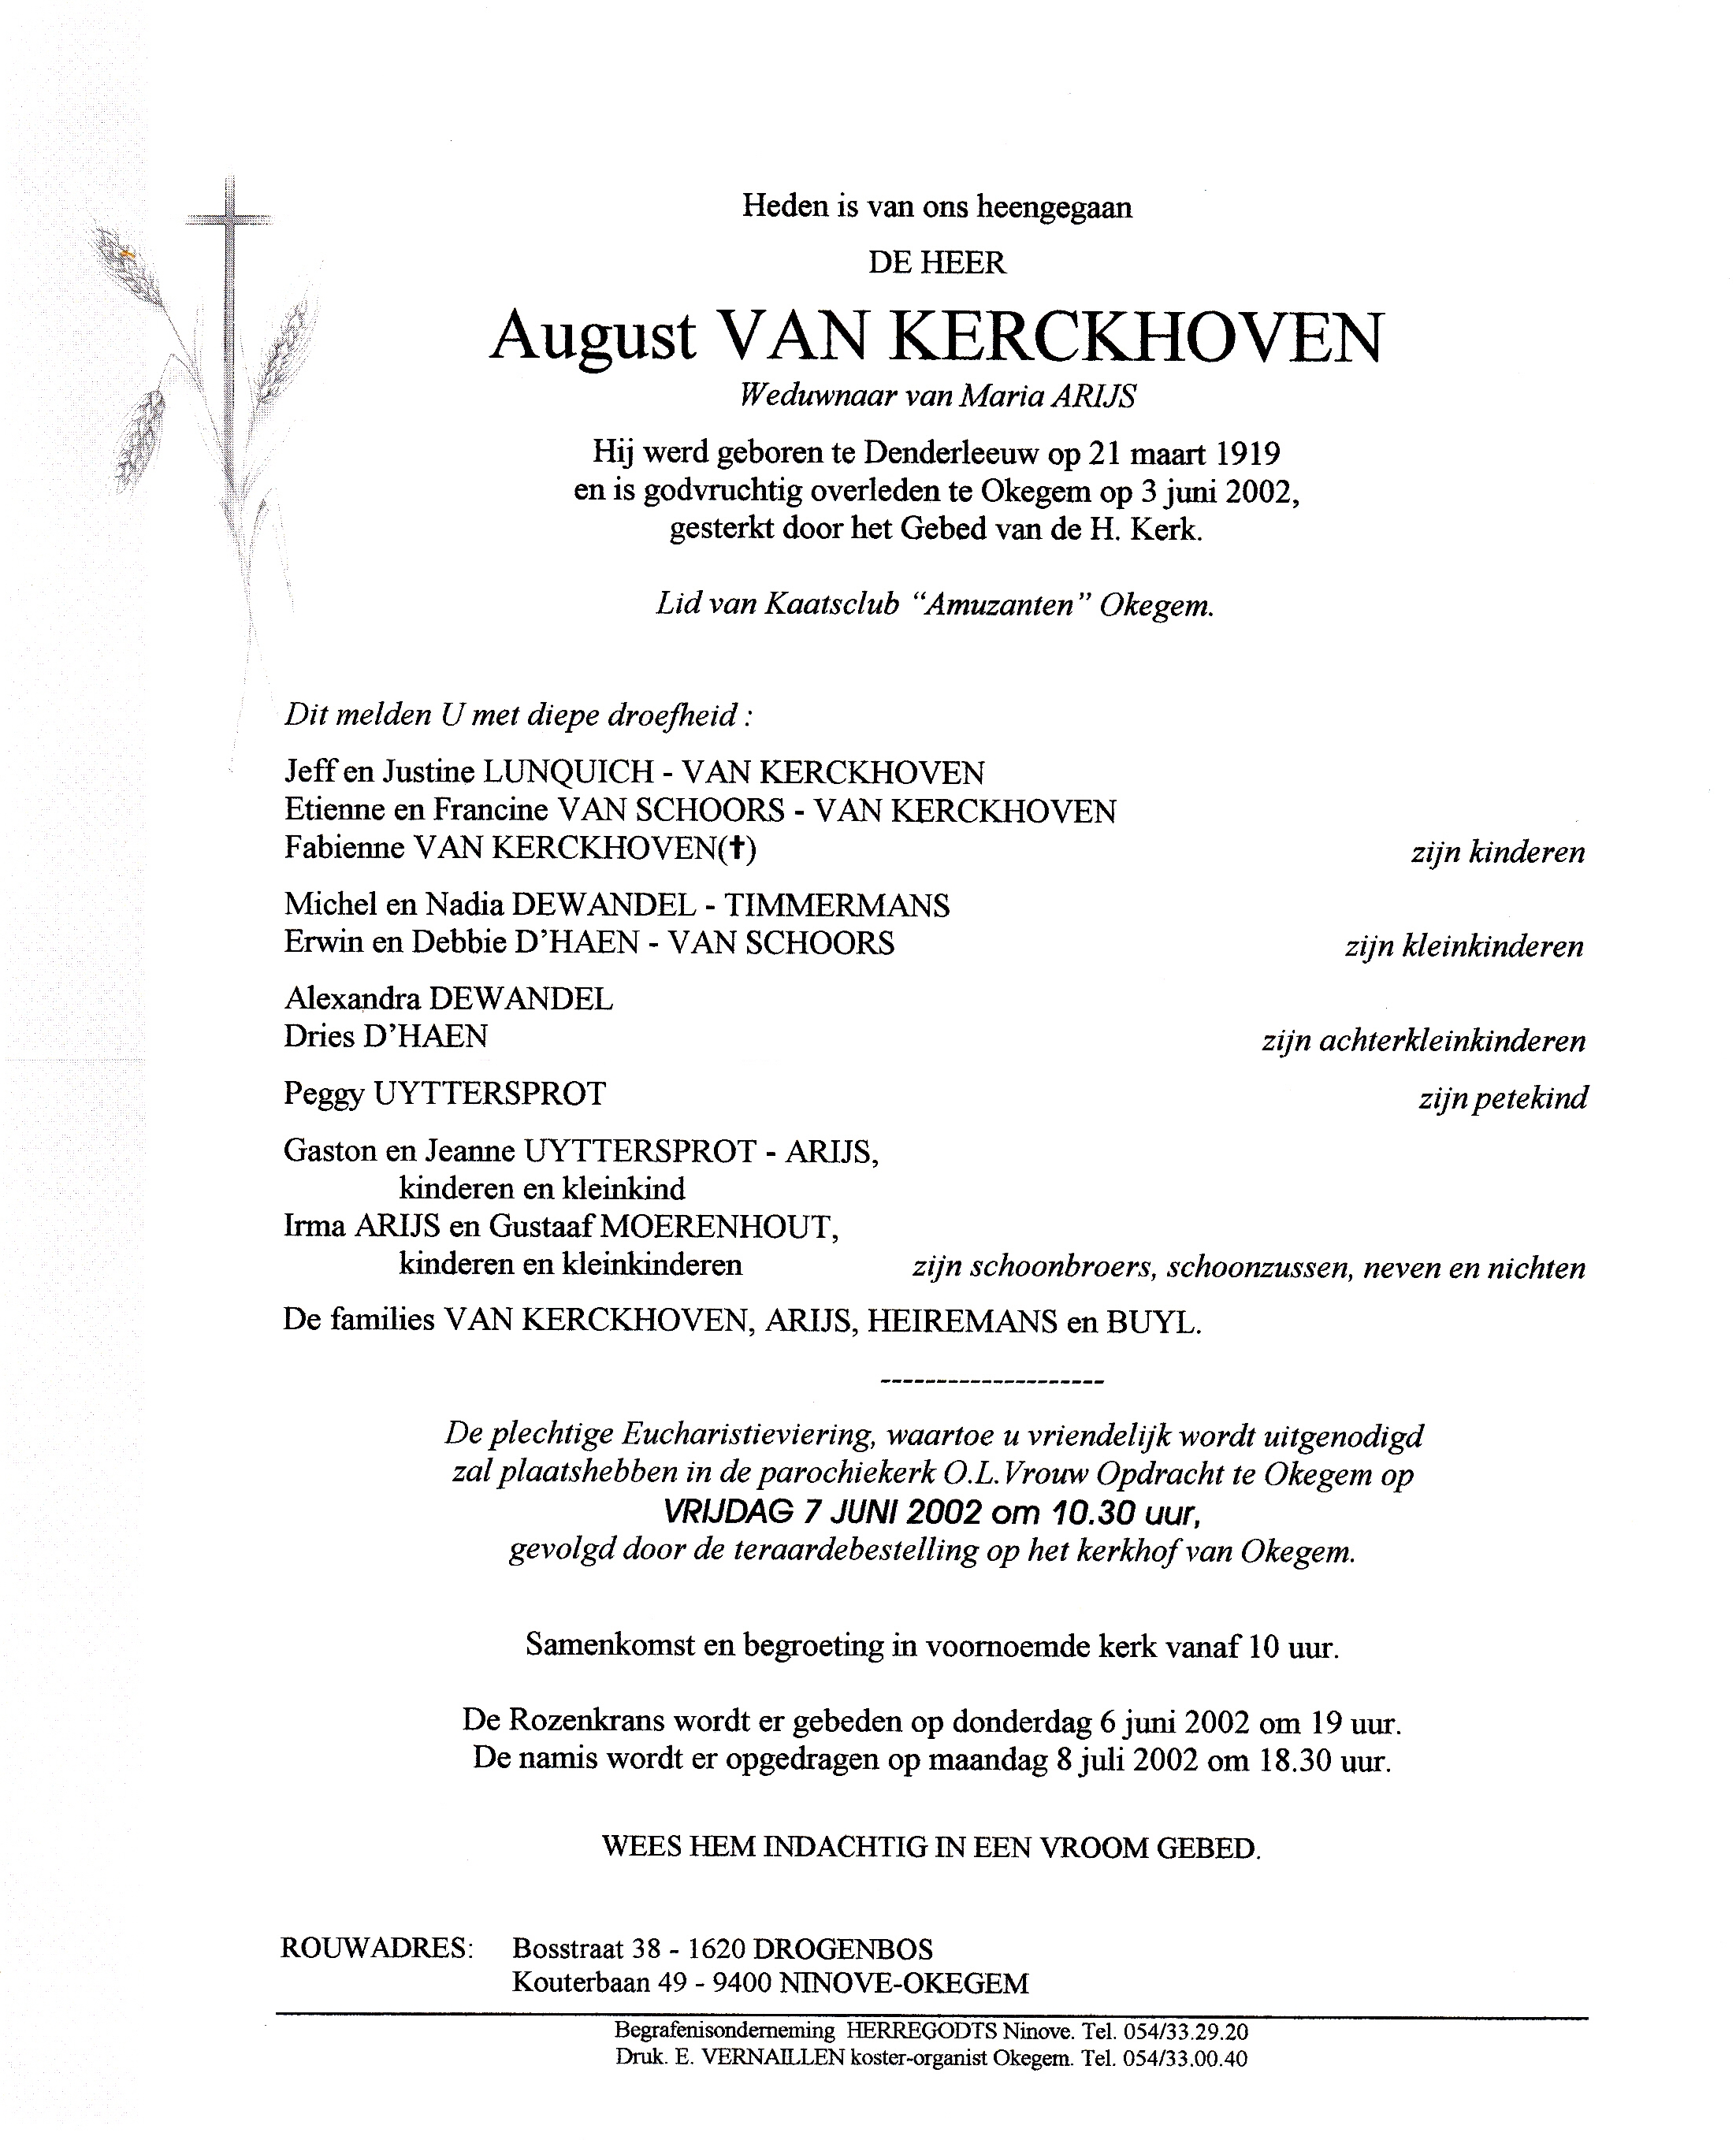 Van Kerckhoven August  